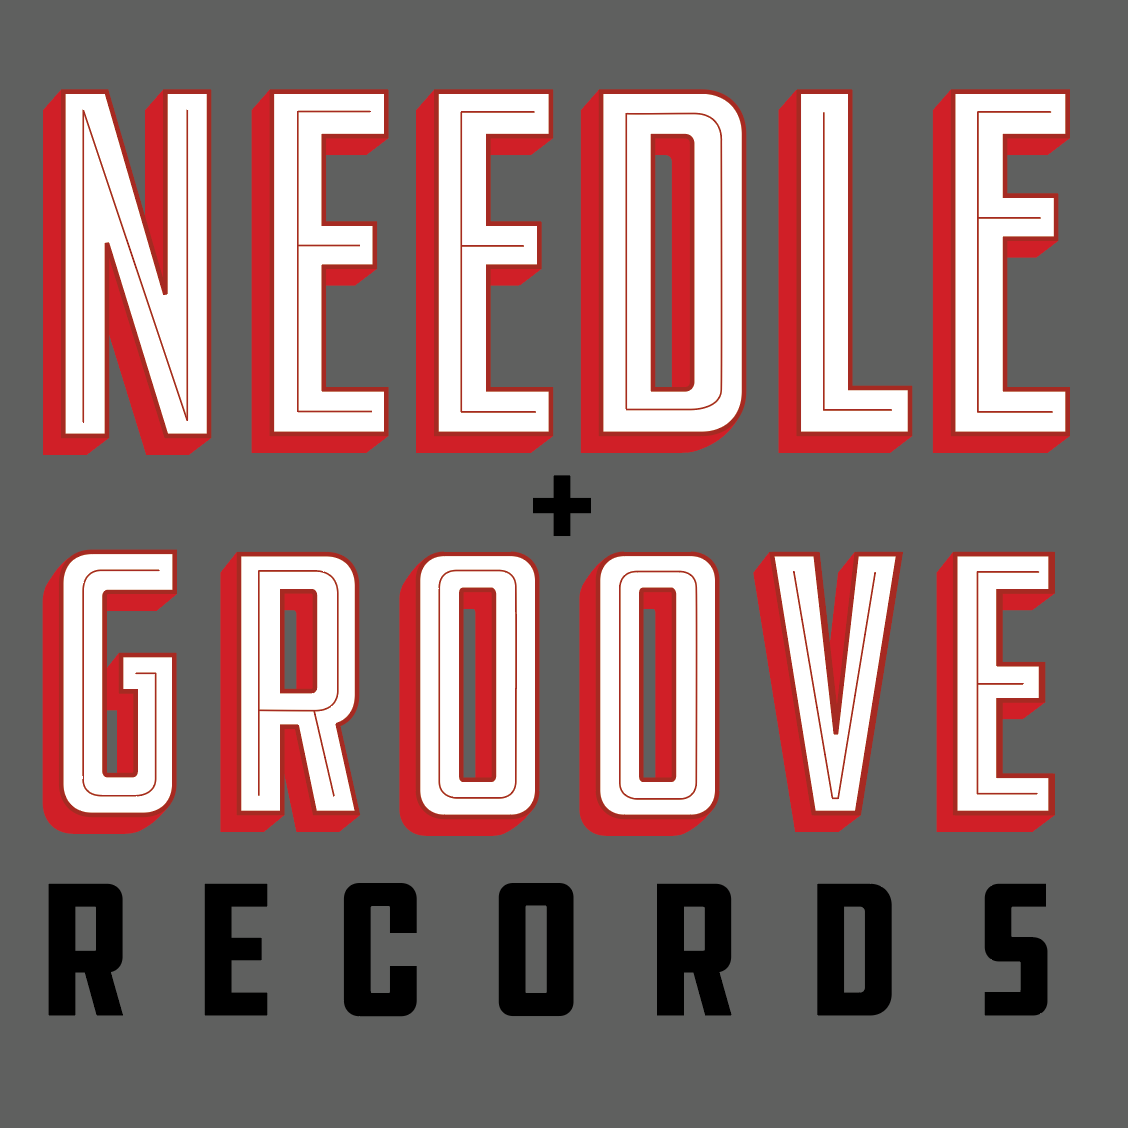 needle groove records